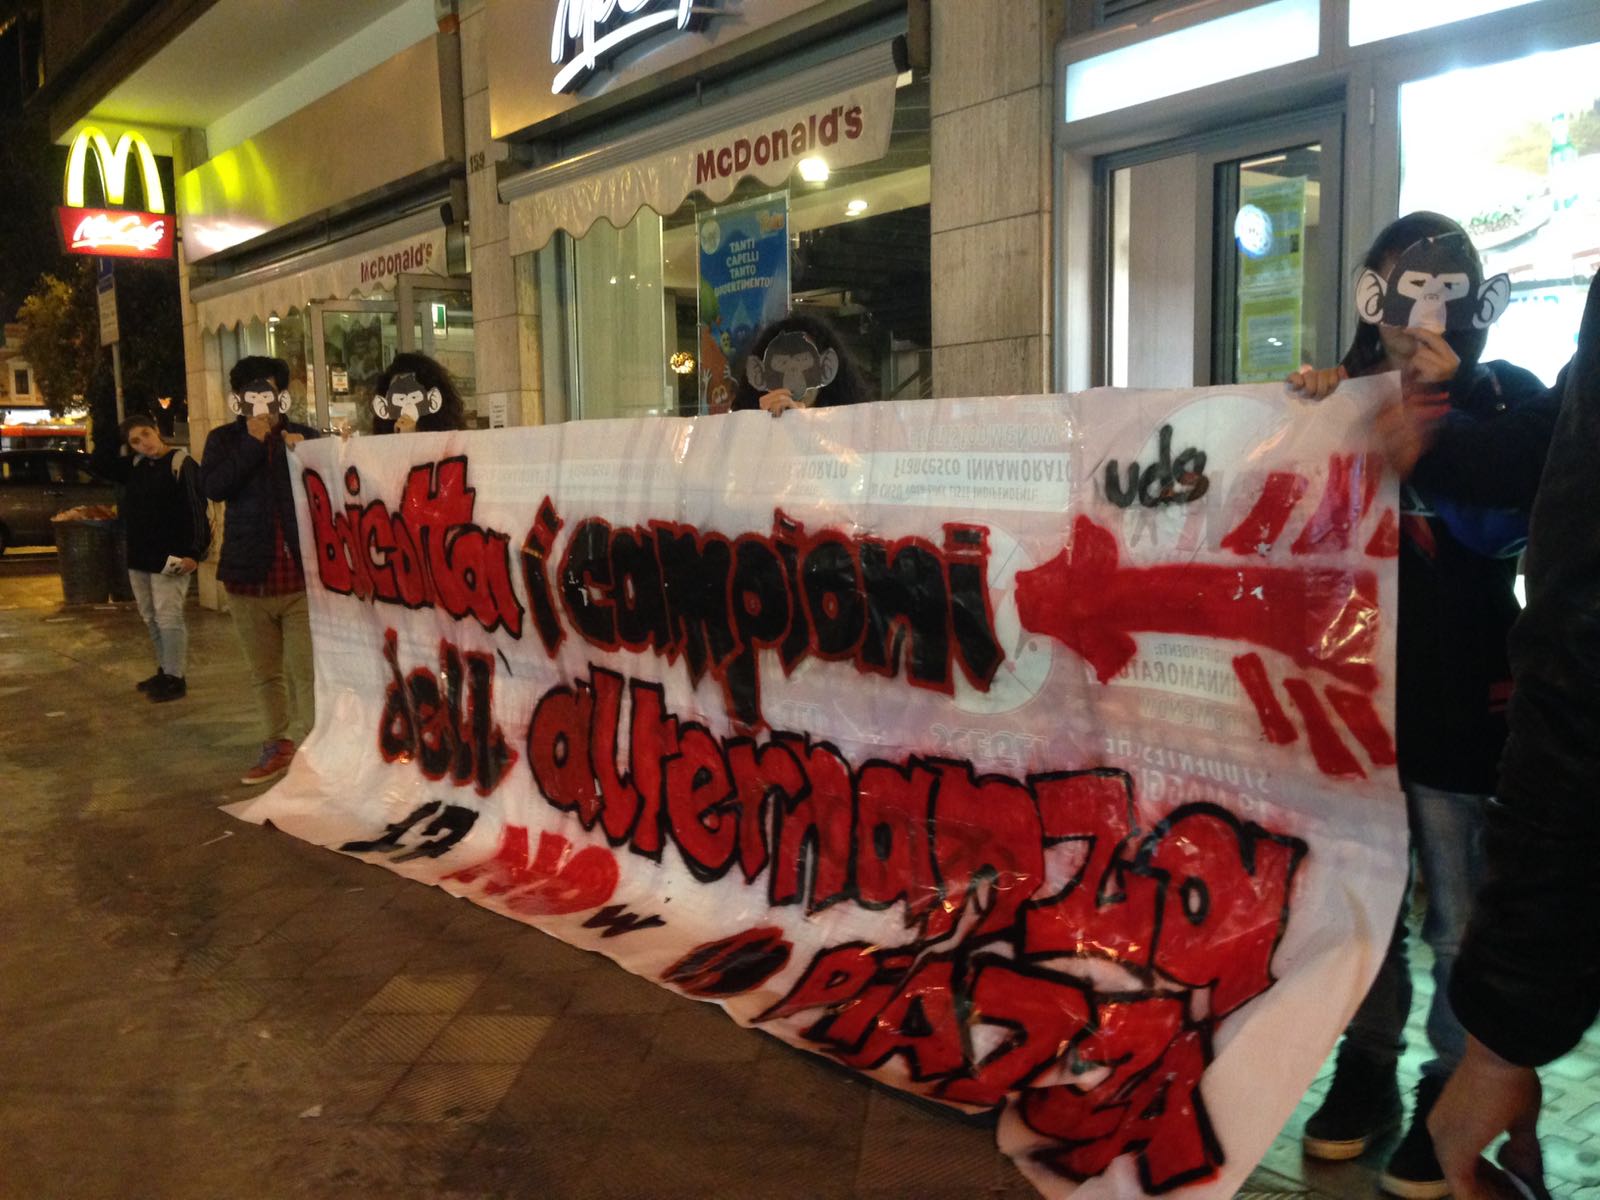 La protesta dell'Uds sull'alternanza scuola lavoro in via Sparano